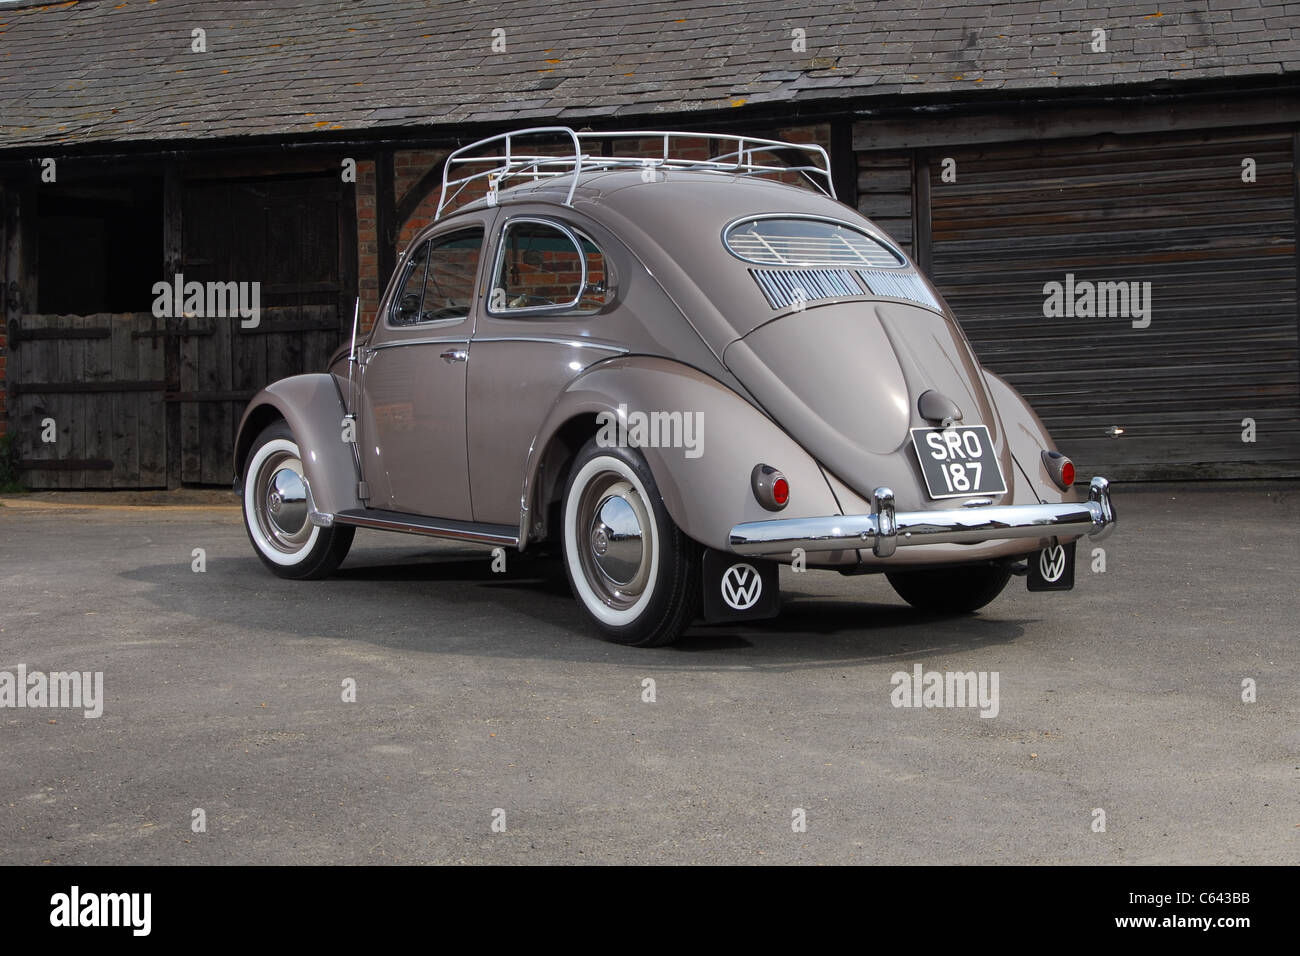 1954 VW Volkswagen Käfer Klassiker Luft gekühlten Heckmotor Auto  Stockfotografie - Alamy